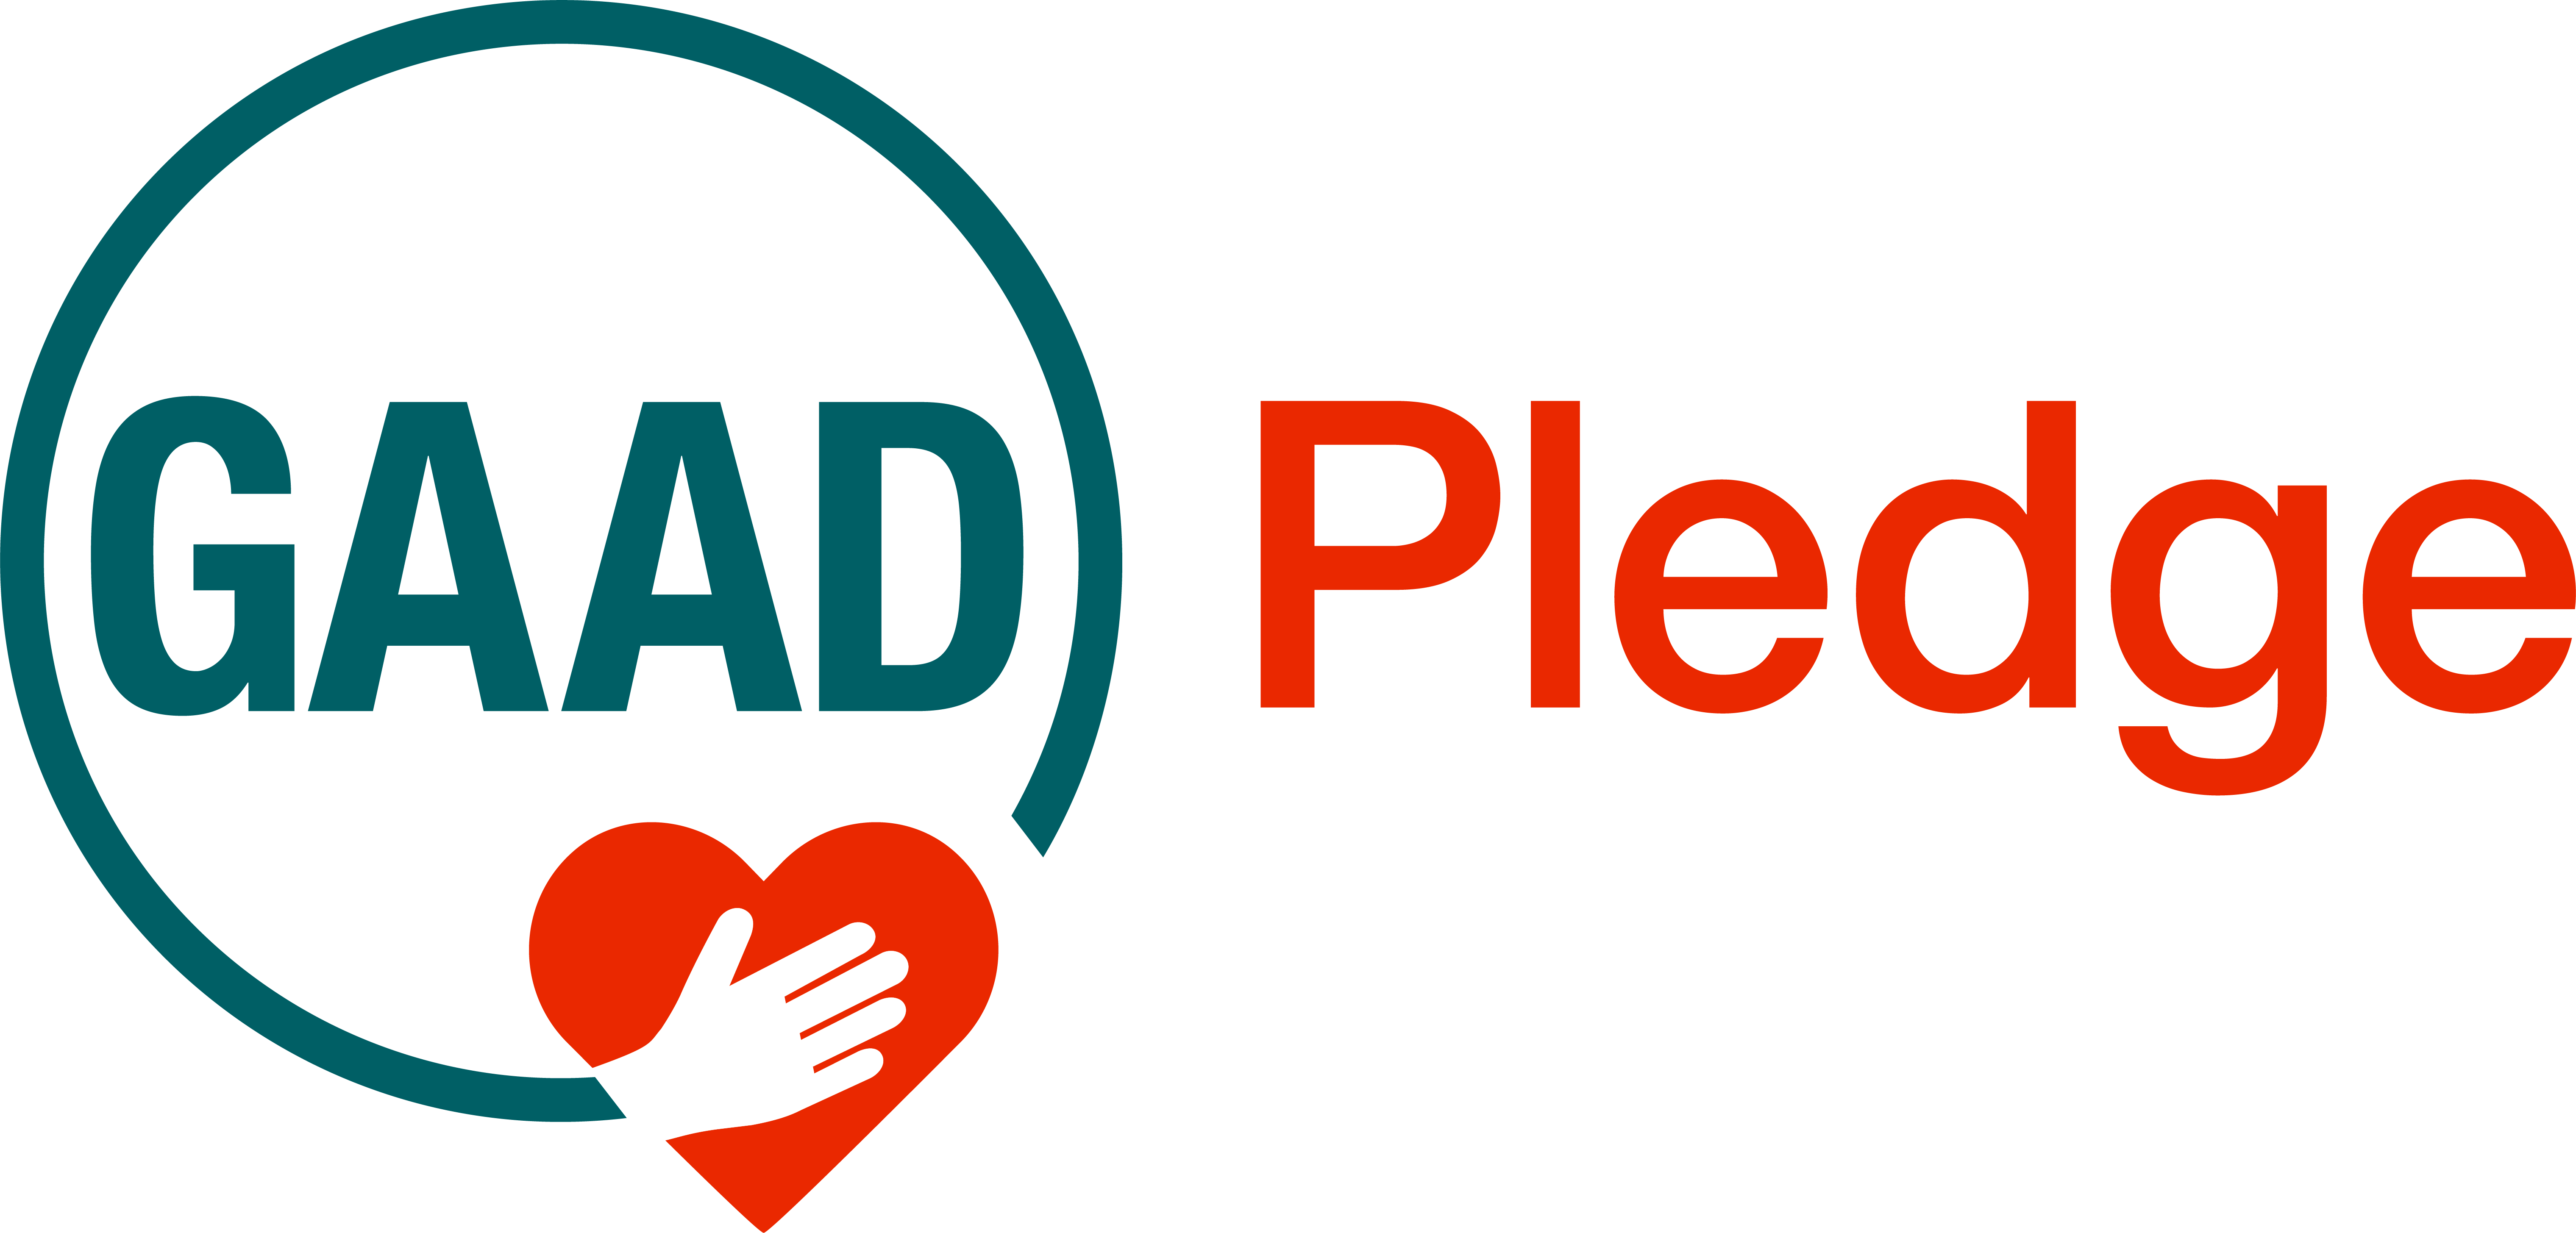 GAAD Foundation Logo